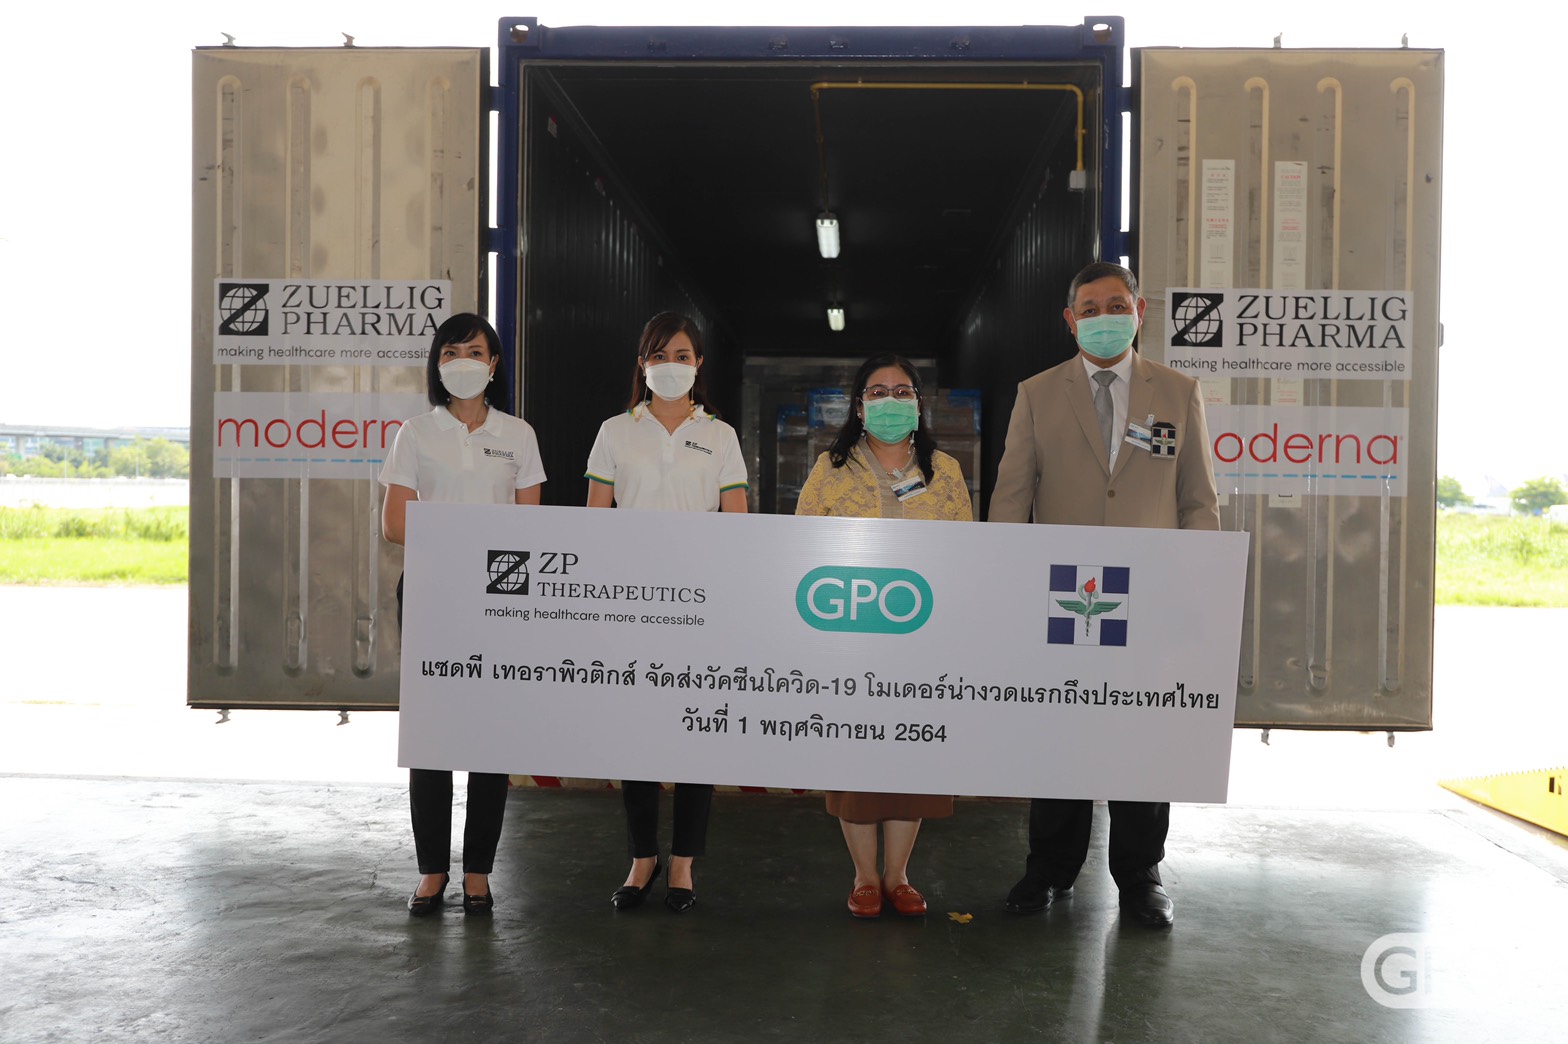 แซดพี เทอราพิวติกส์ พร้อมส่งมอบวัคซีนโควิด-19 โมเดอร์น่า งวดแรก เพื่อเพิ่มการเข้าถึงวัคซีนในประเทศไทย